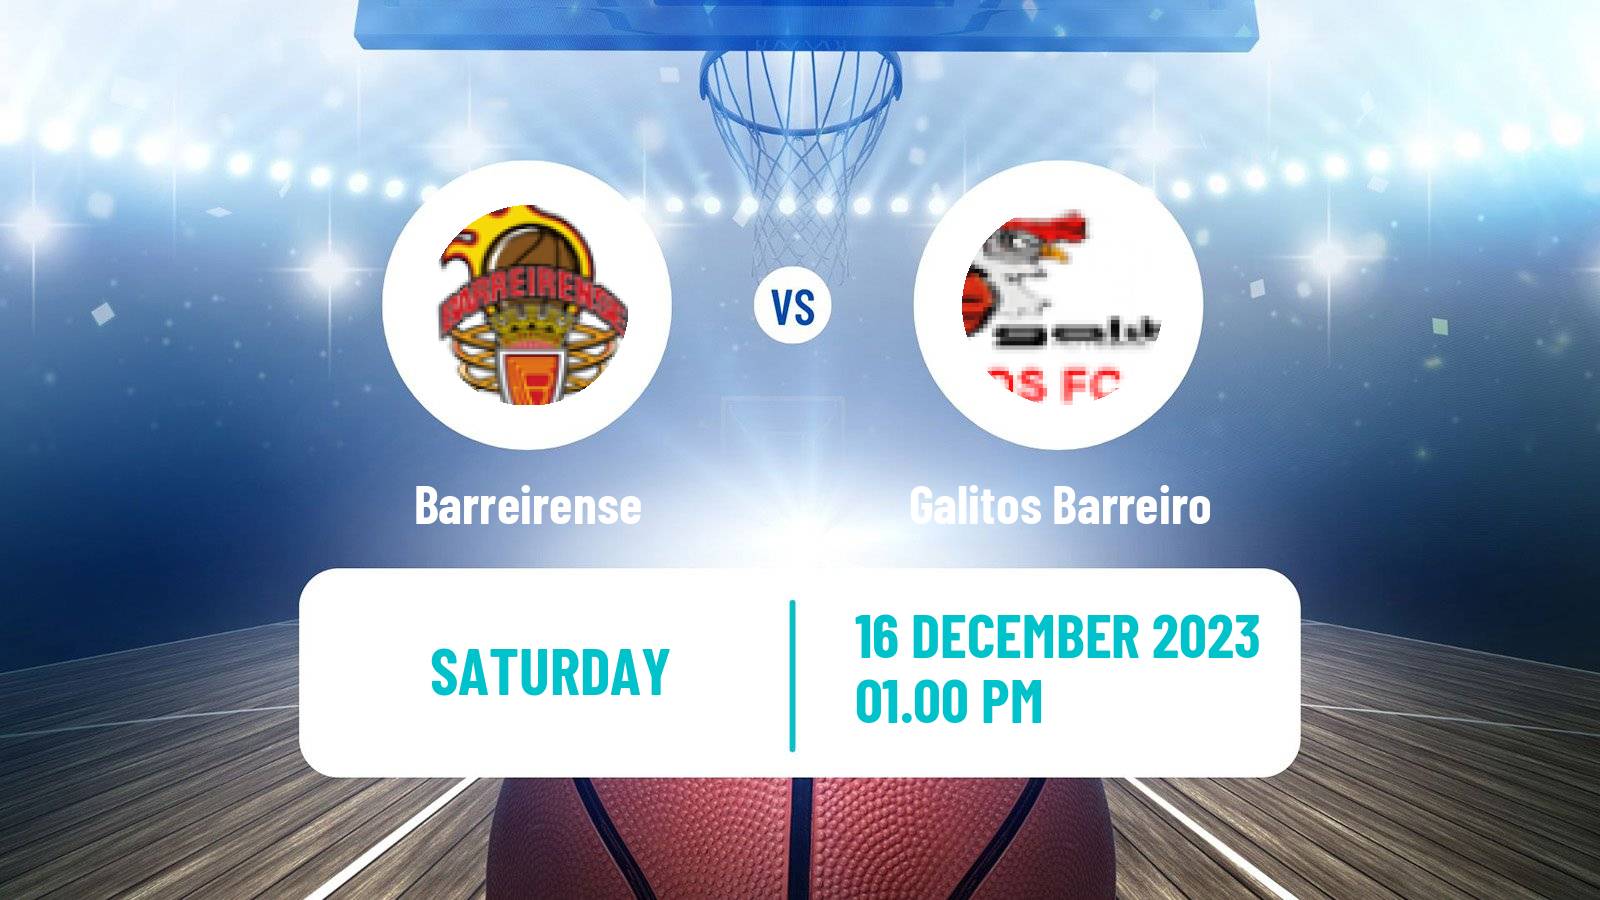 Basketball Portuguese Proliga Basketball Barreirense - Galitos Barreiro